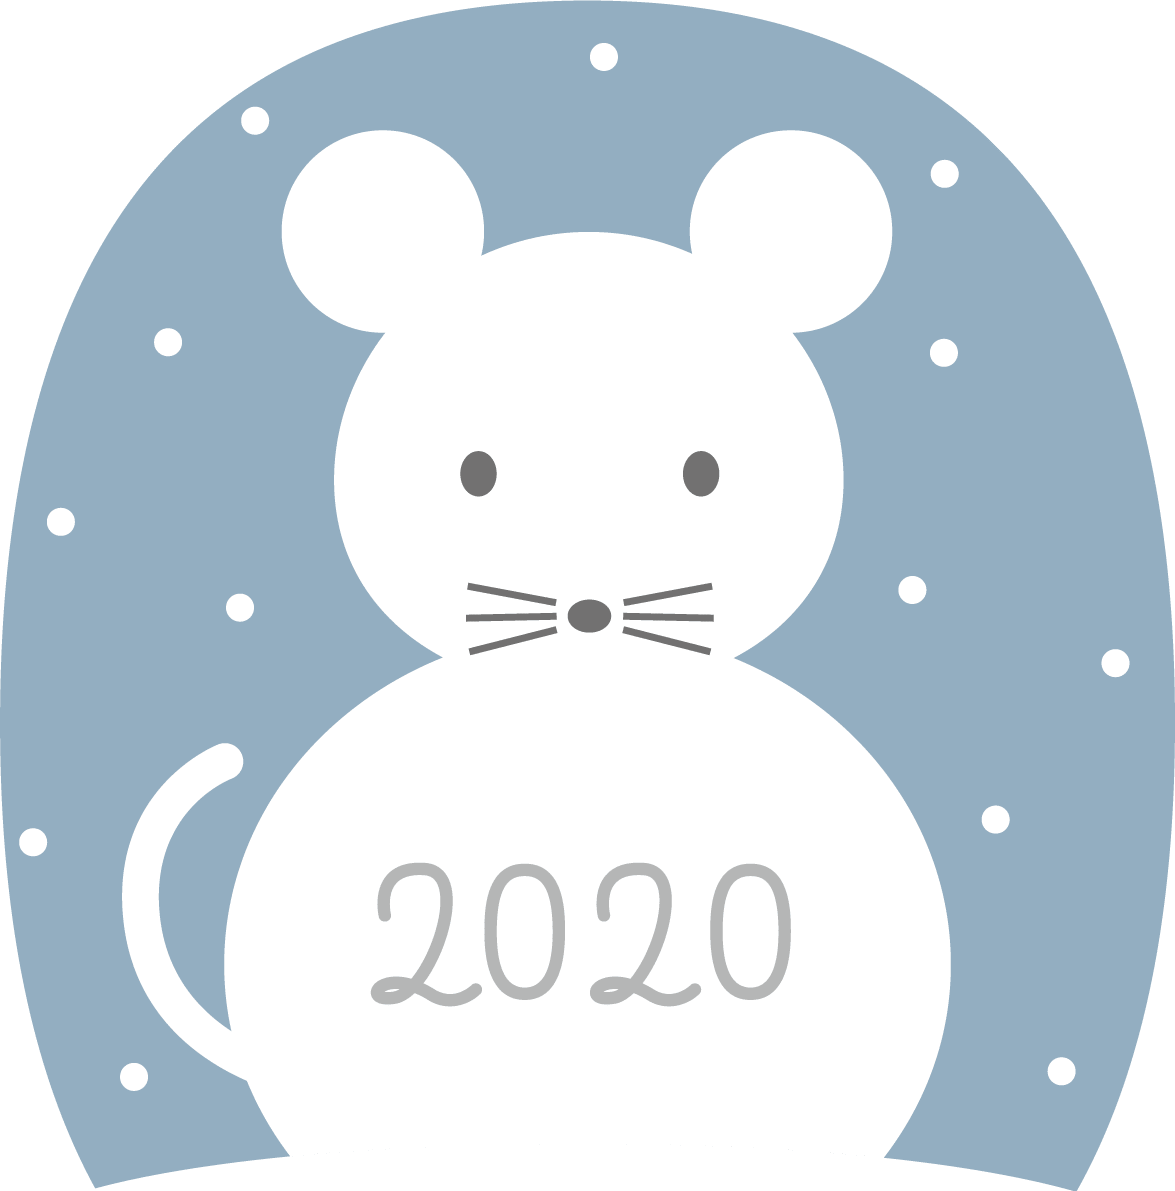 雪だるまのねずみ(ネズミ-鼠)かわいい子年(2020)